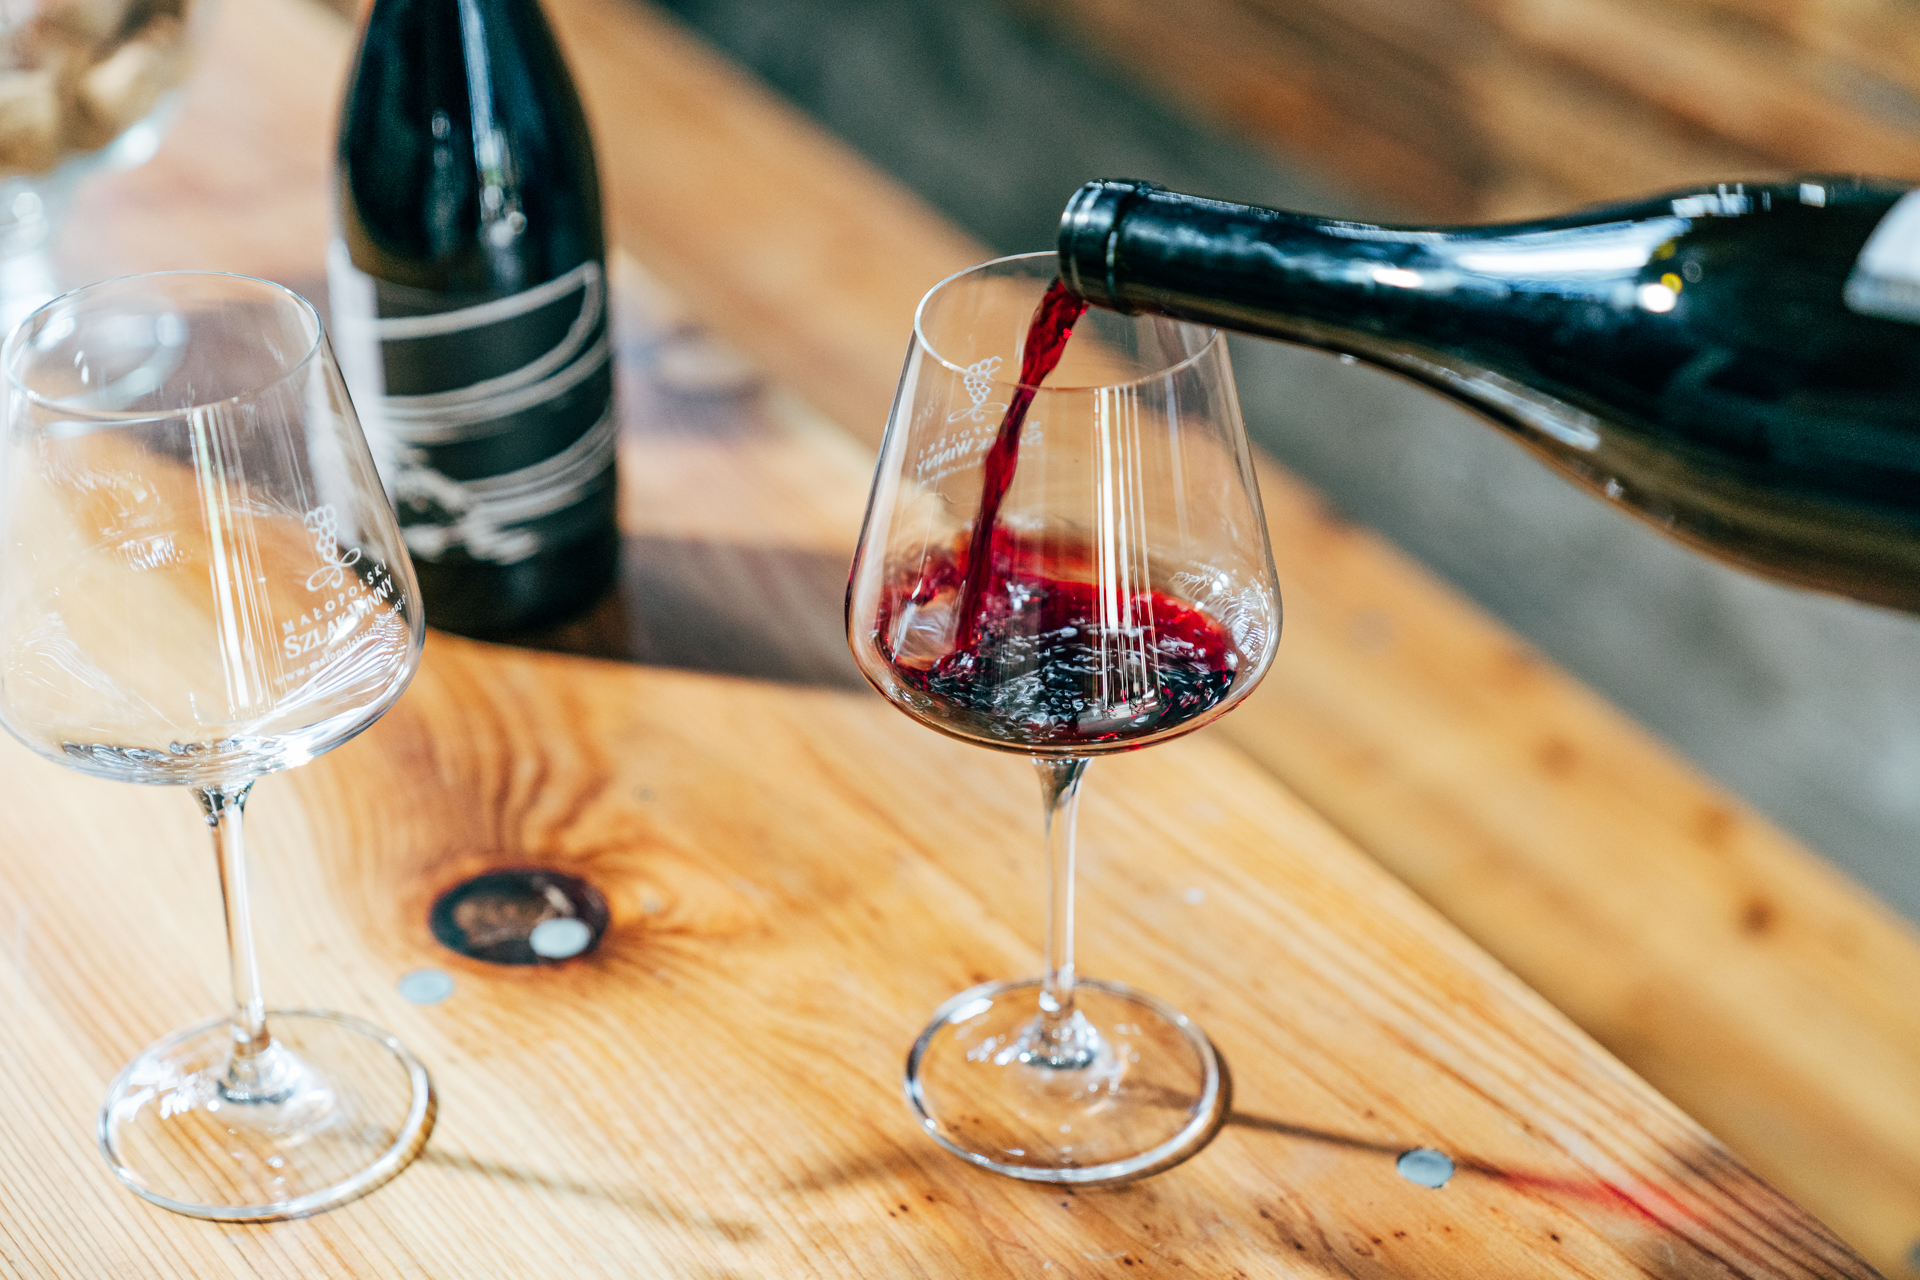 Czerwone wino leje się z butelki trafiając do szklanego kieliszka